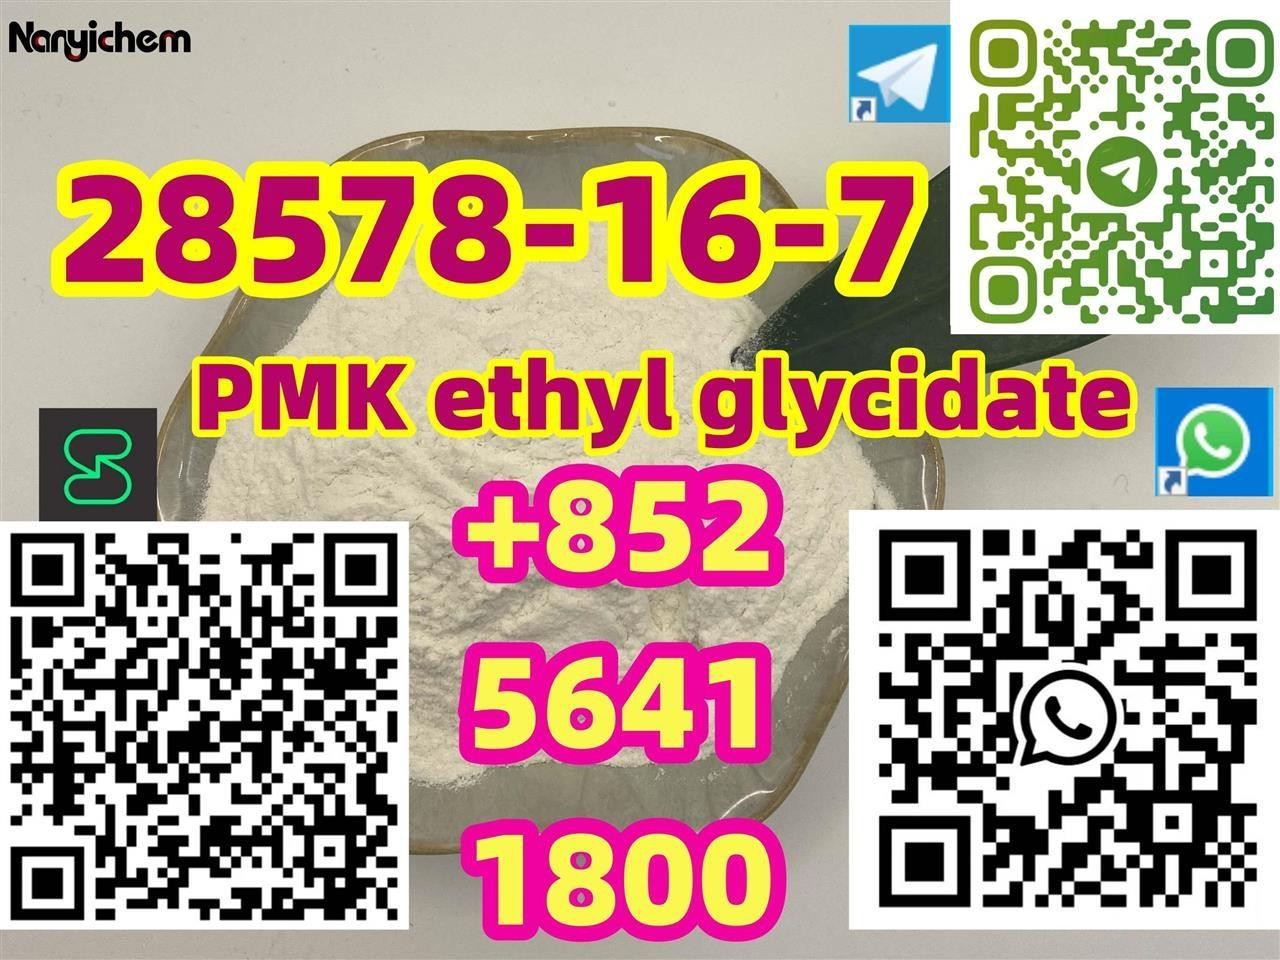 CAS 28578-16-7   PMK ethyl glycidate